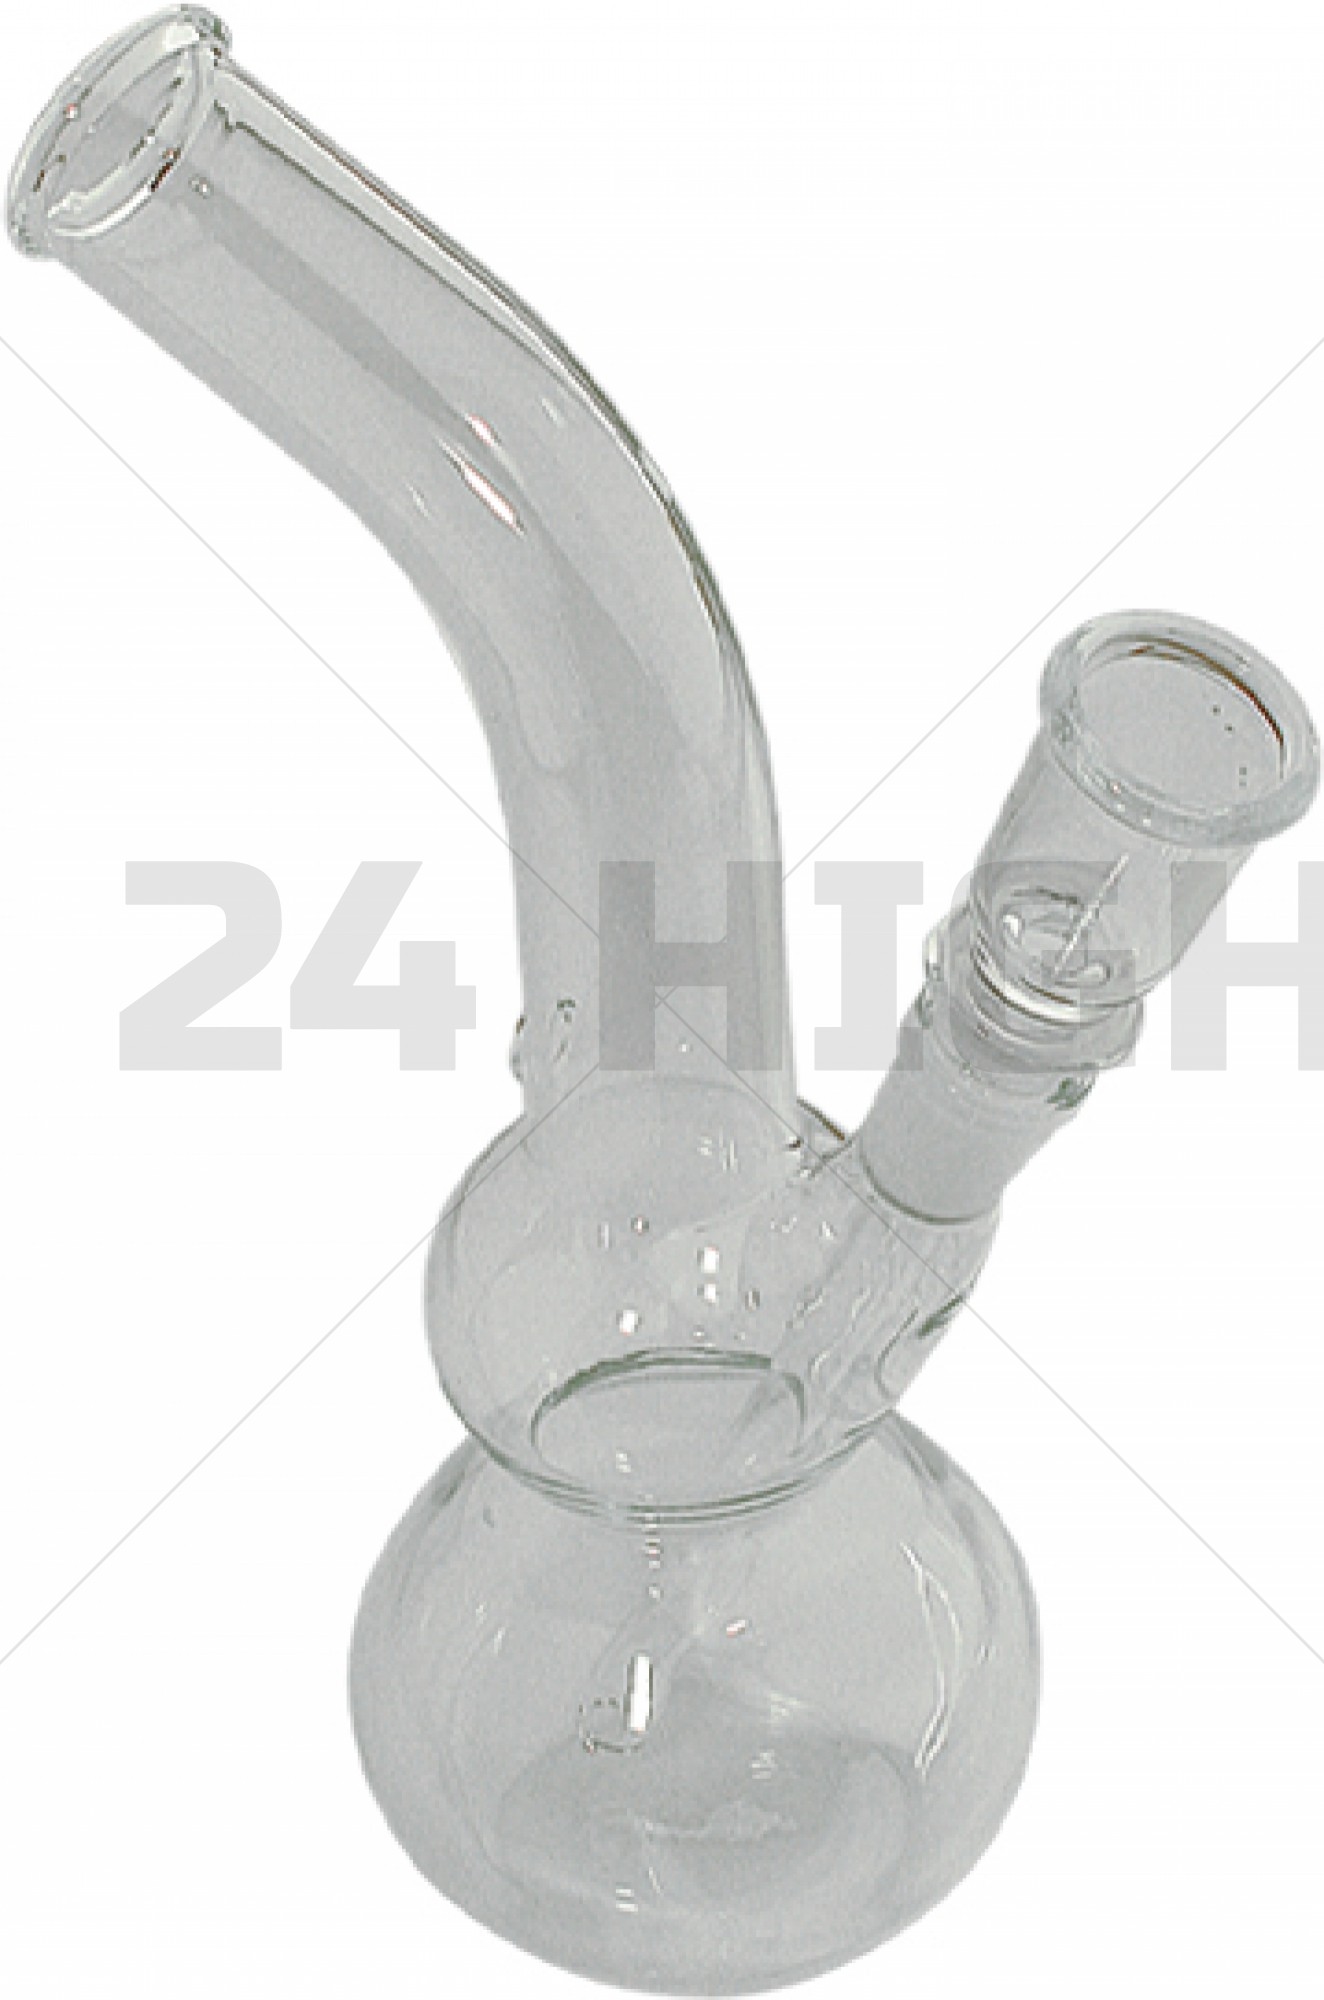 Glass Bong 18 cm